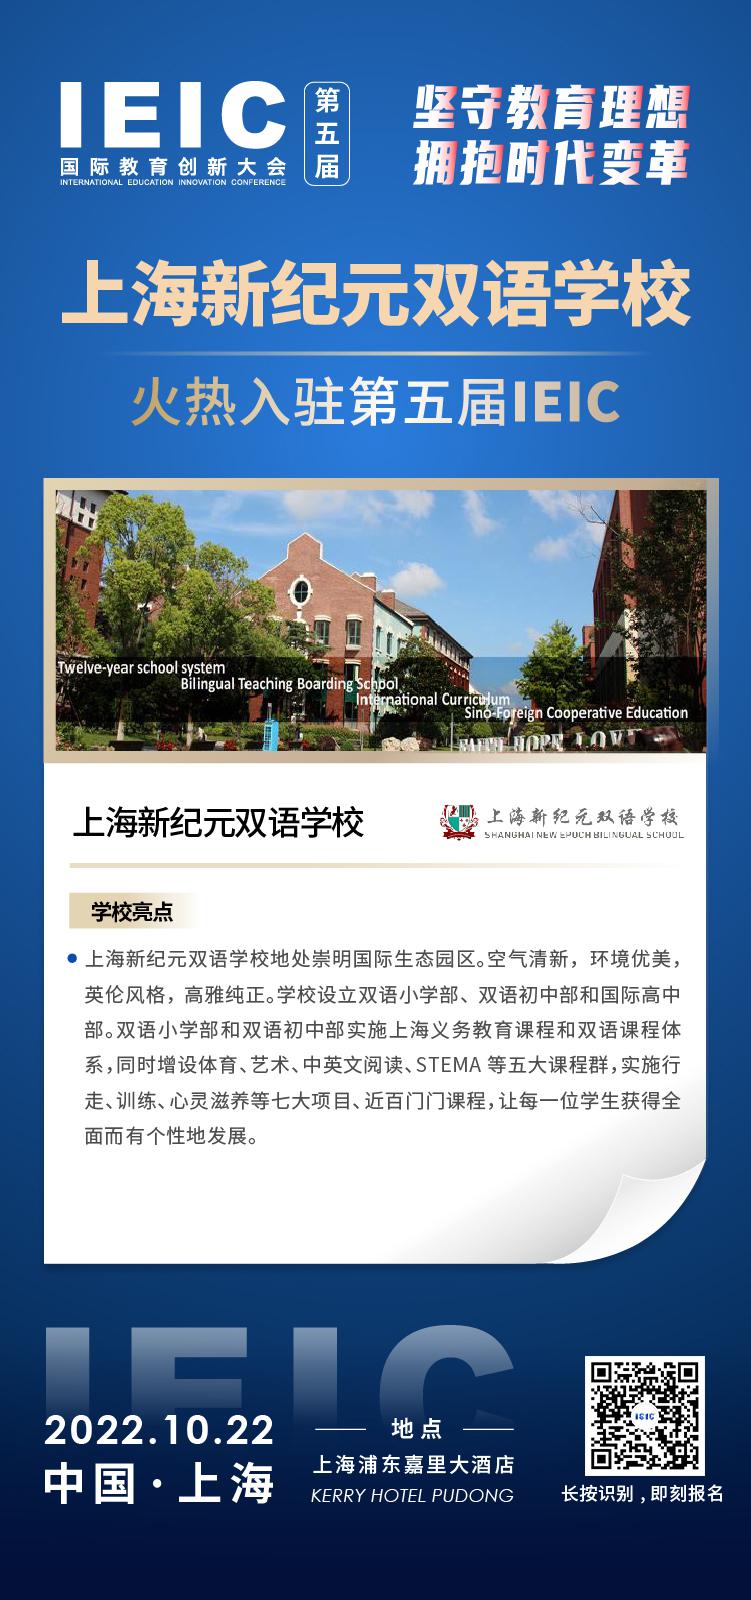 上海新纪元双语学校成功入驻参加2022年远播第五届IEIC国际教育创新大会